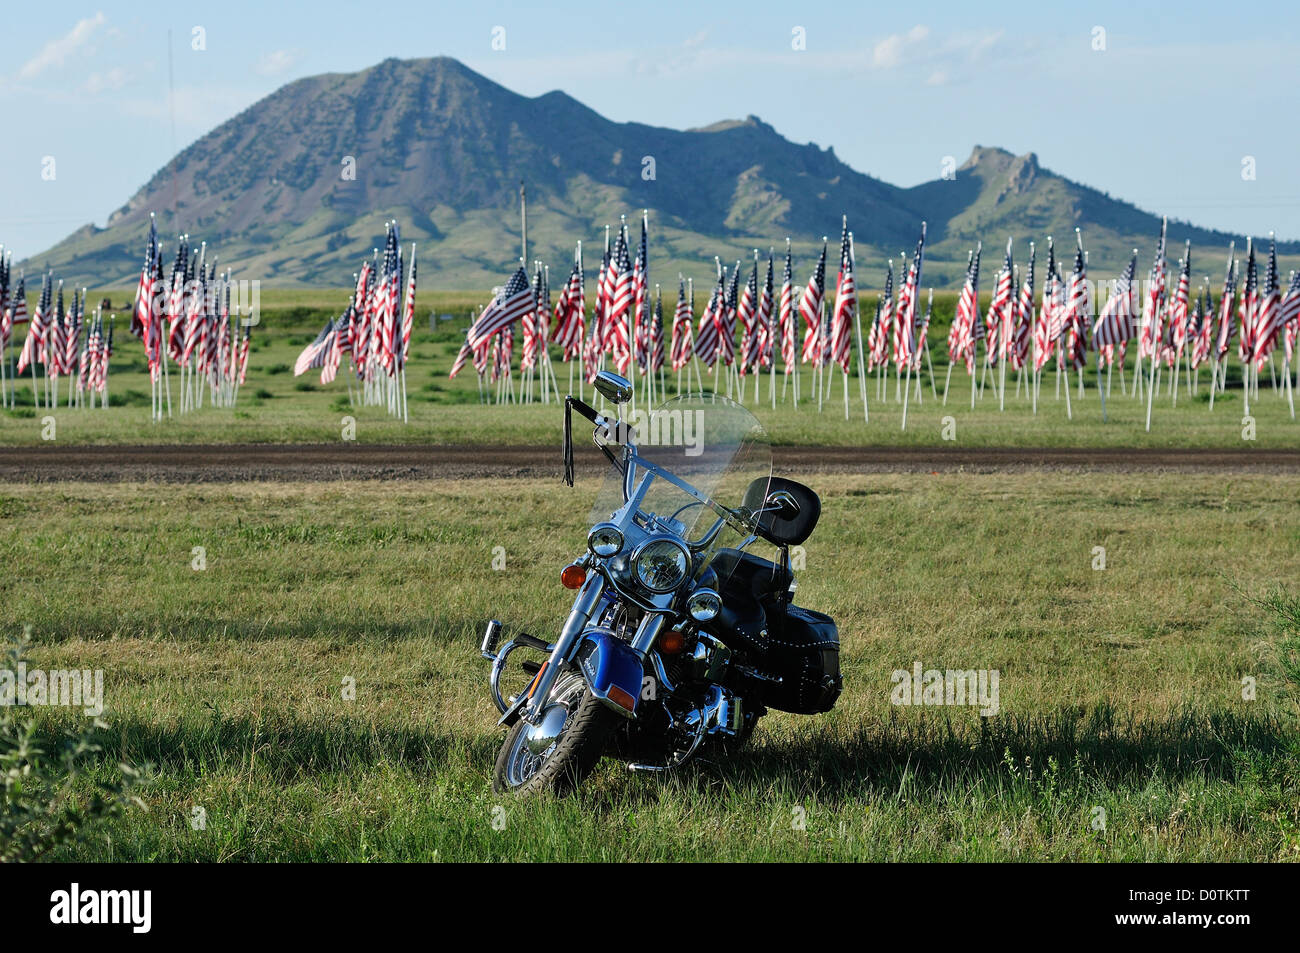 Amerikanische Flaggen, Fahnen, Harley, Harley Davidson, Motorrad, fahren,  Freiheit, Grünland, Sturgis, South Dakota, USA, Vereinigte Staaten, Ameri  Stockfotografie - Alamy